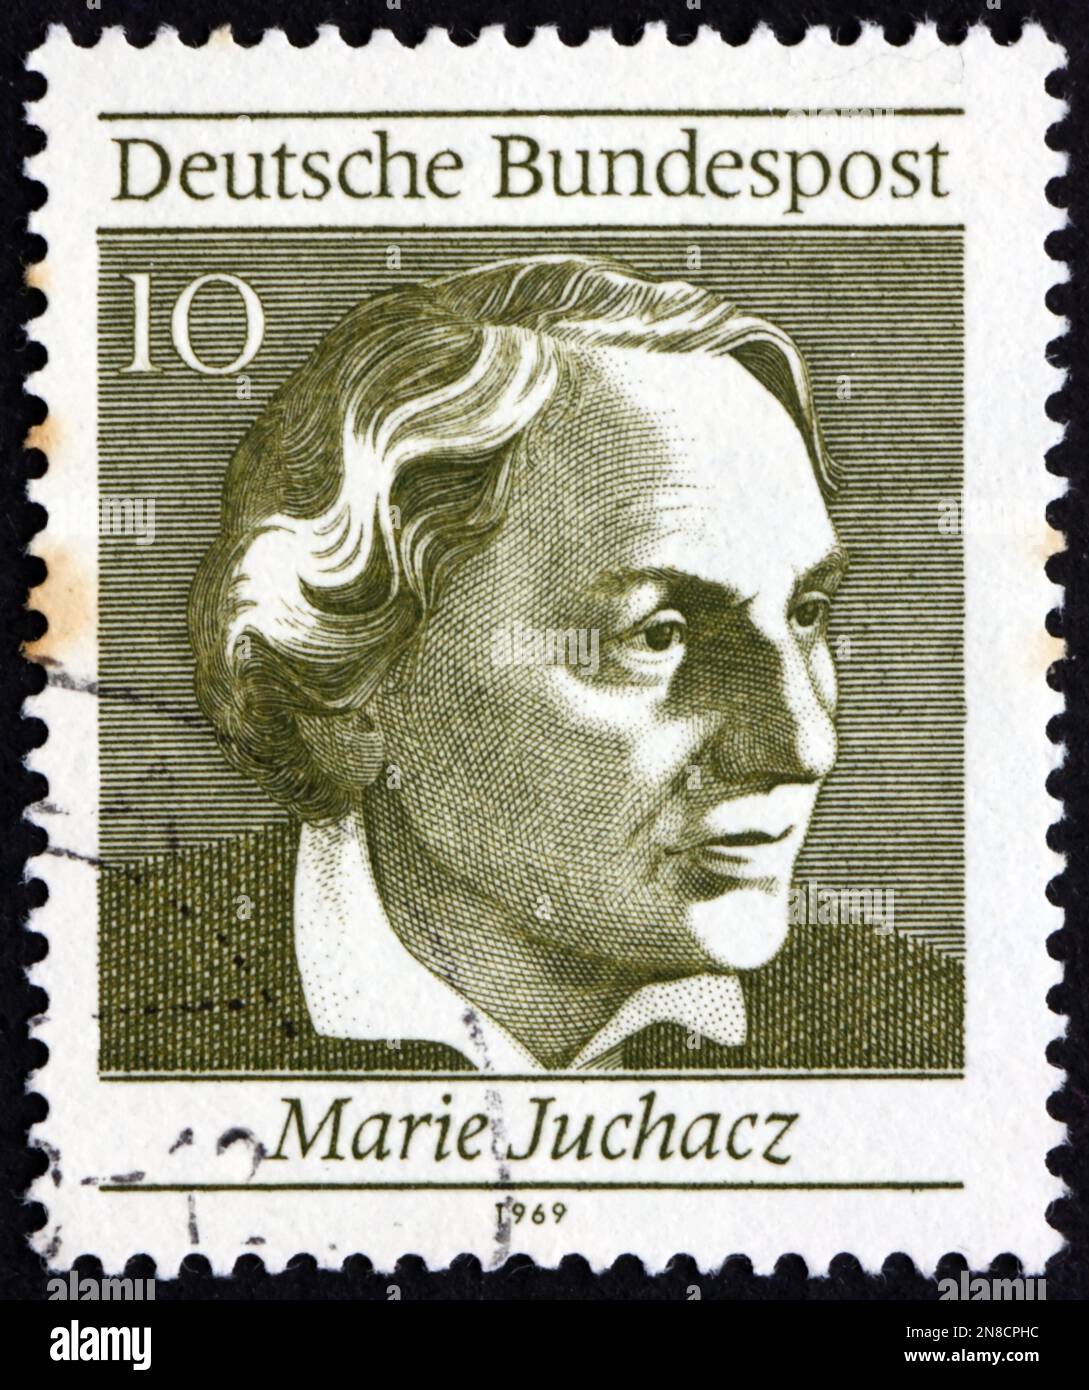 GERMANIA - CIRCA 1969: Un francobollo stampato in Germania mostra Marie Juchacz (1879-1956), è stato un reformer sociale tedesco, il primo membro femminile del Reichstag, a. Foto Stock